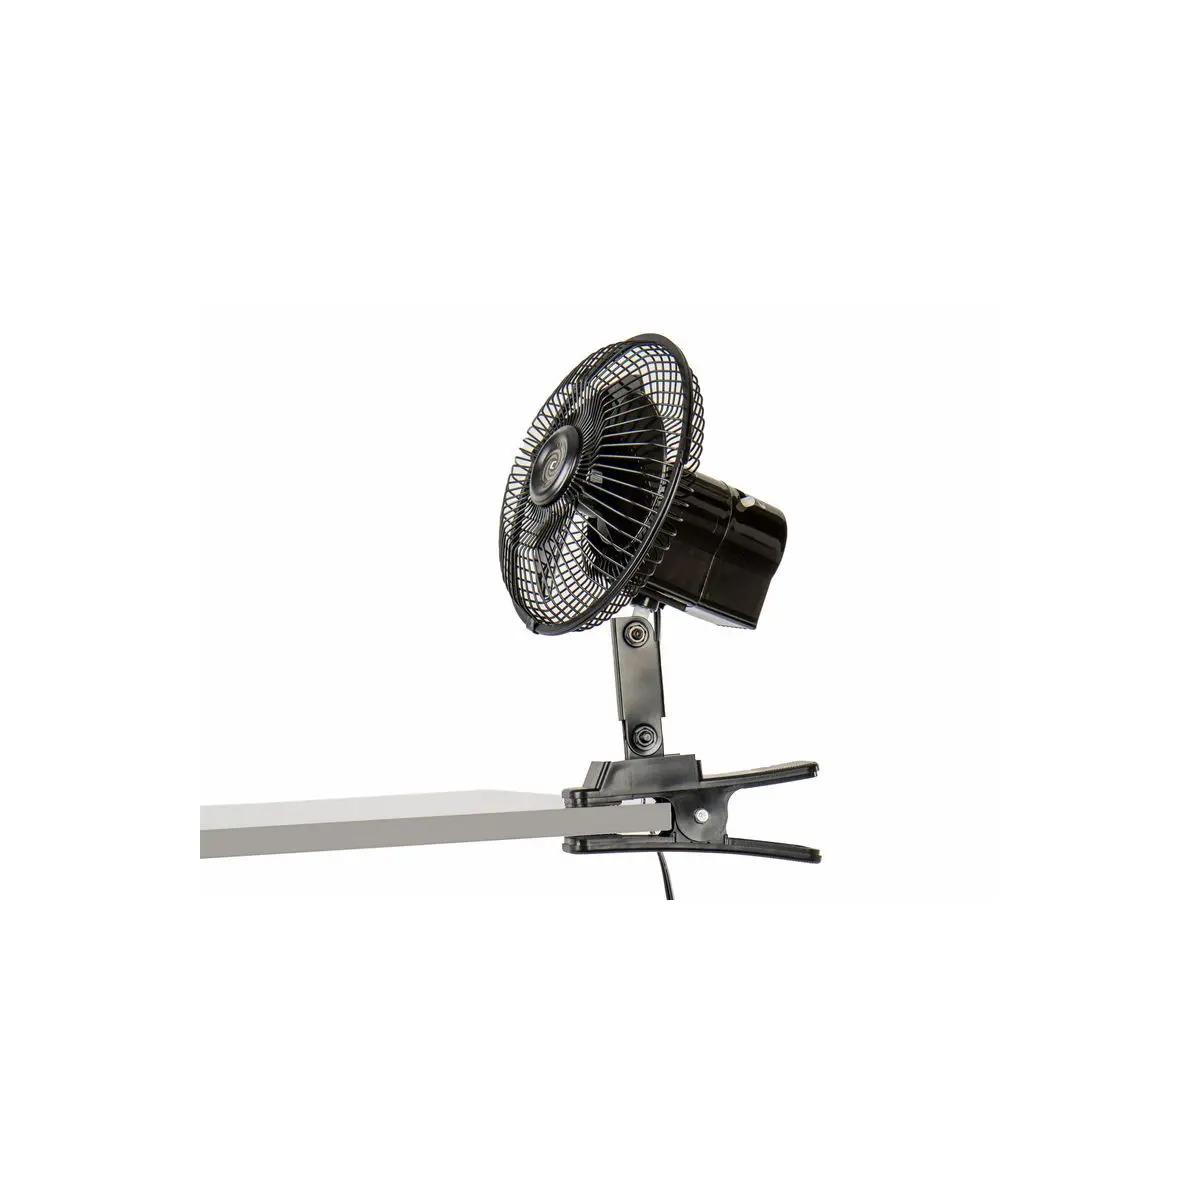 Ventilator 12 V - Oscilant cu suport clema